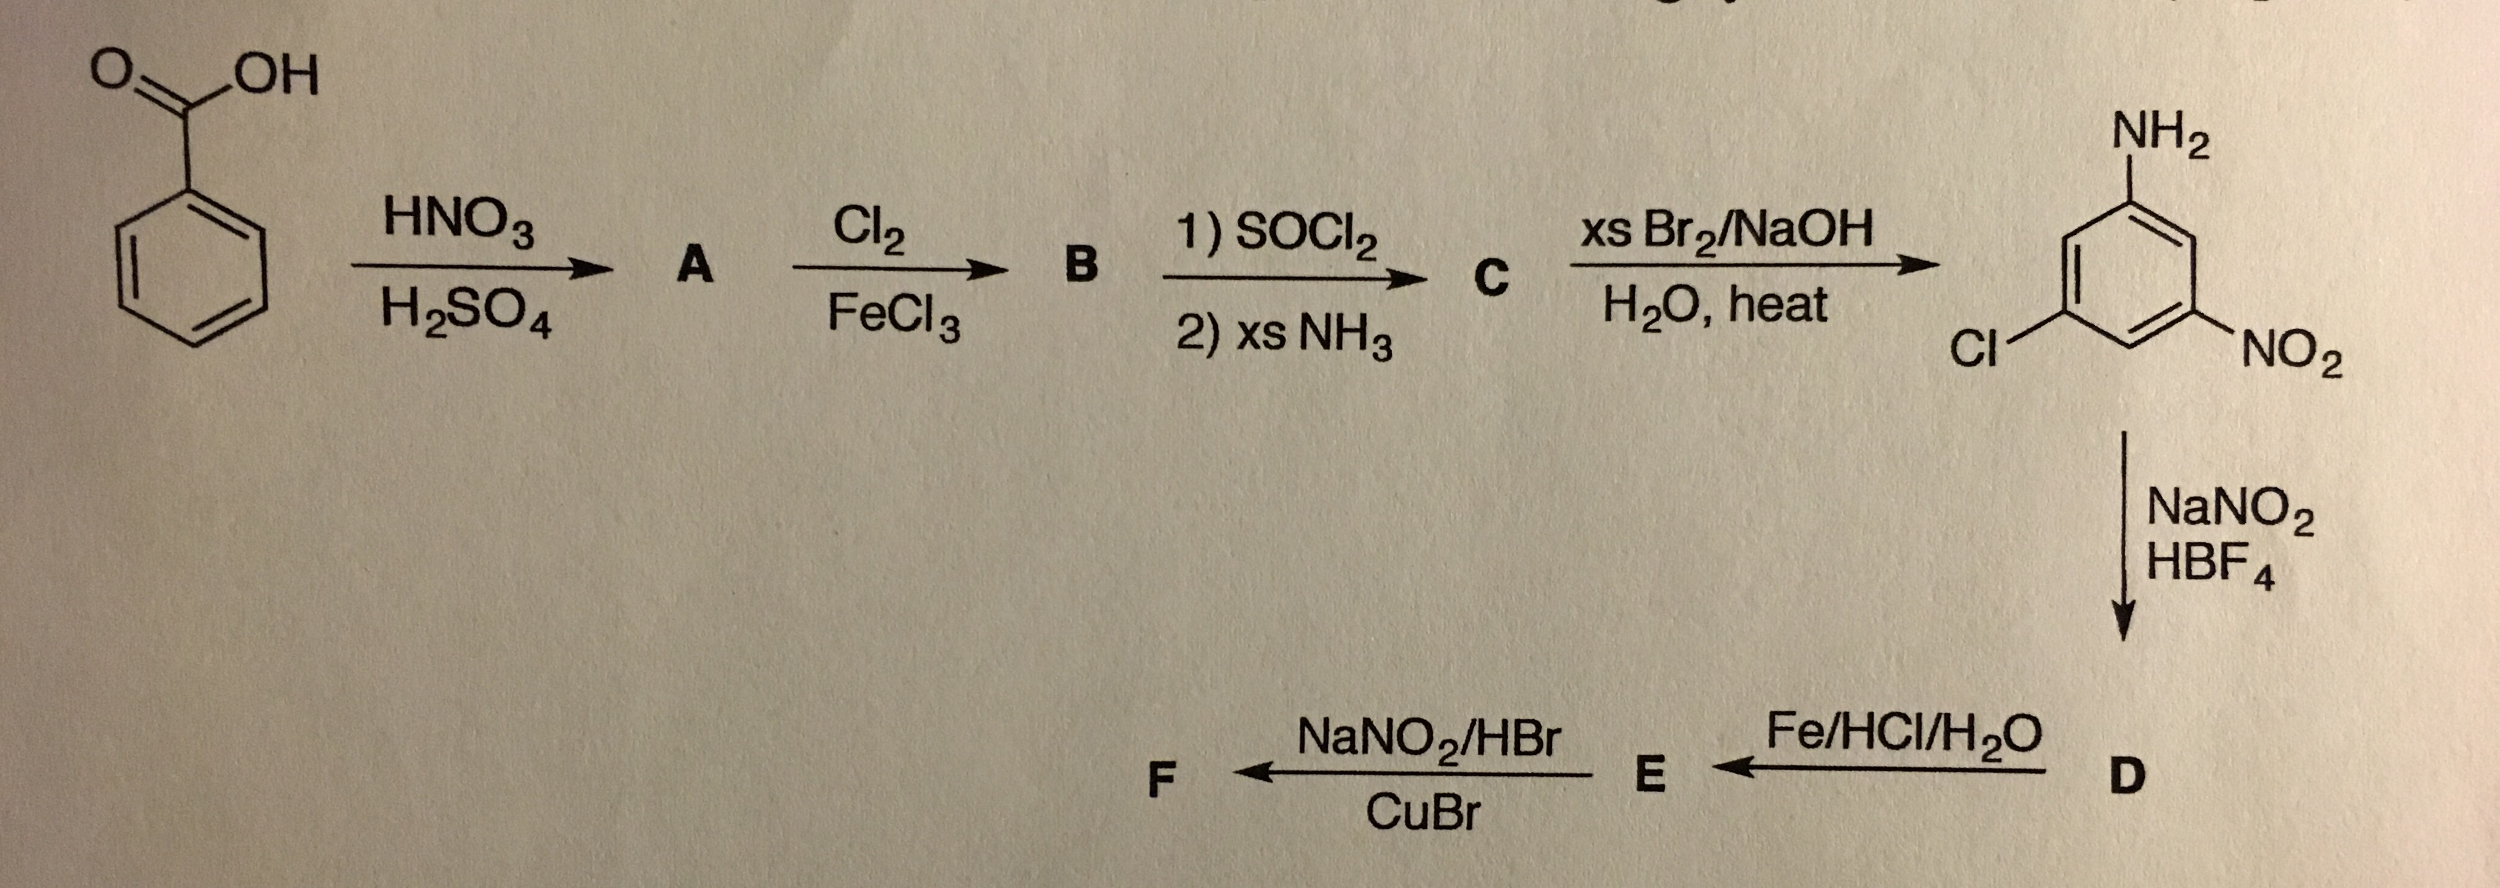 C6h5chcl2 naoh. Ch3nh3br + hno2. Бензол hno2. Метилбензол + 2cl2 al2o3. Hno3 h2so4.